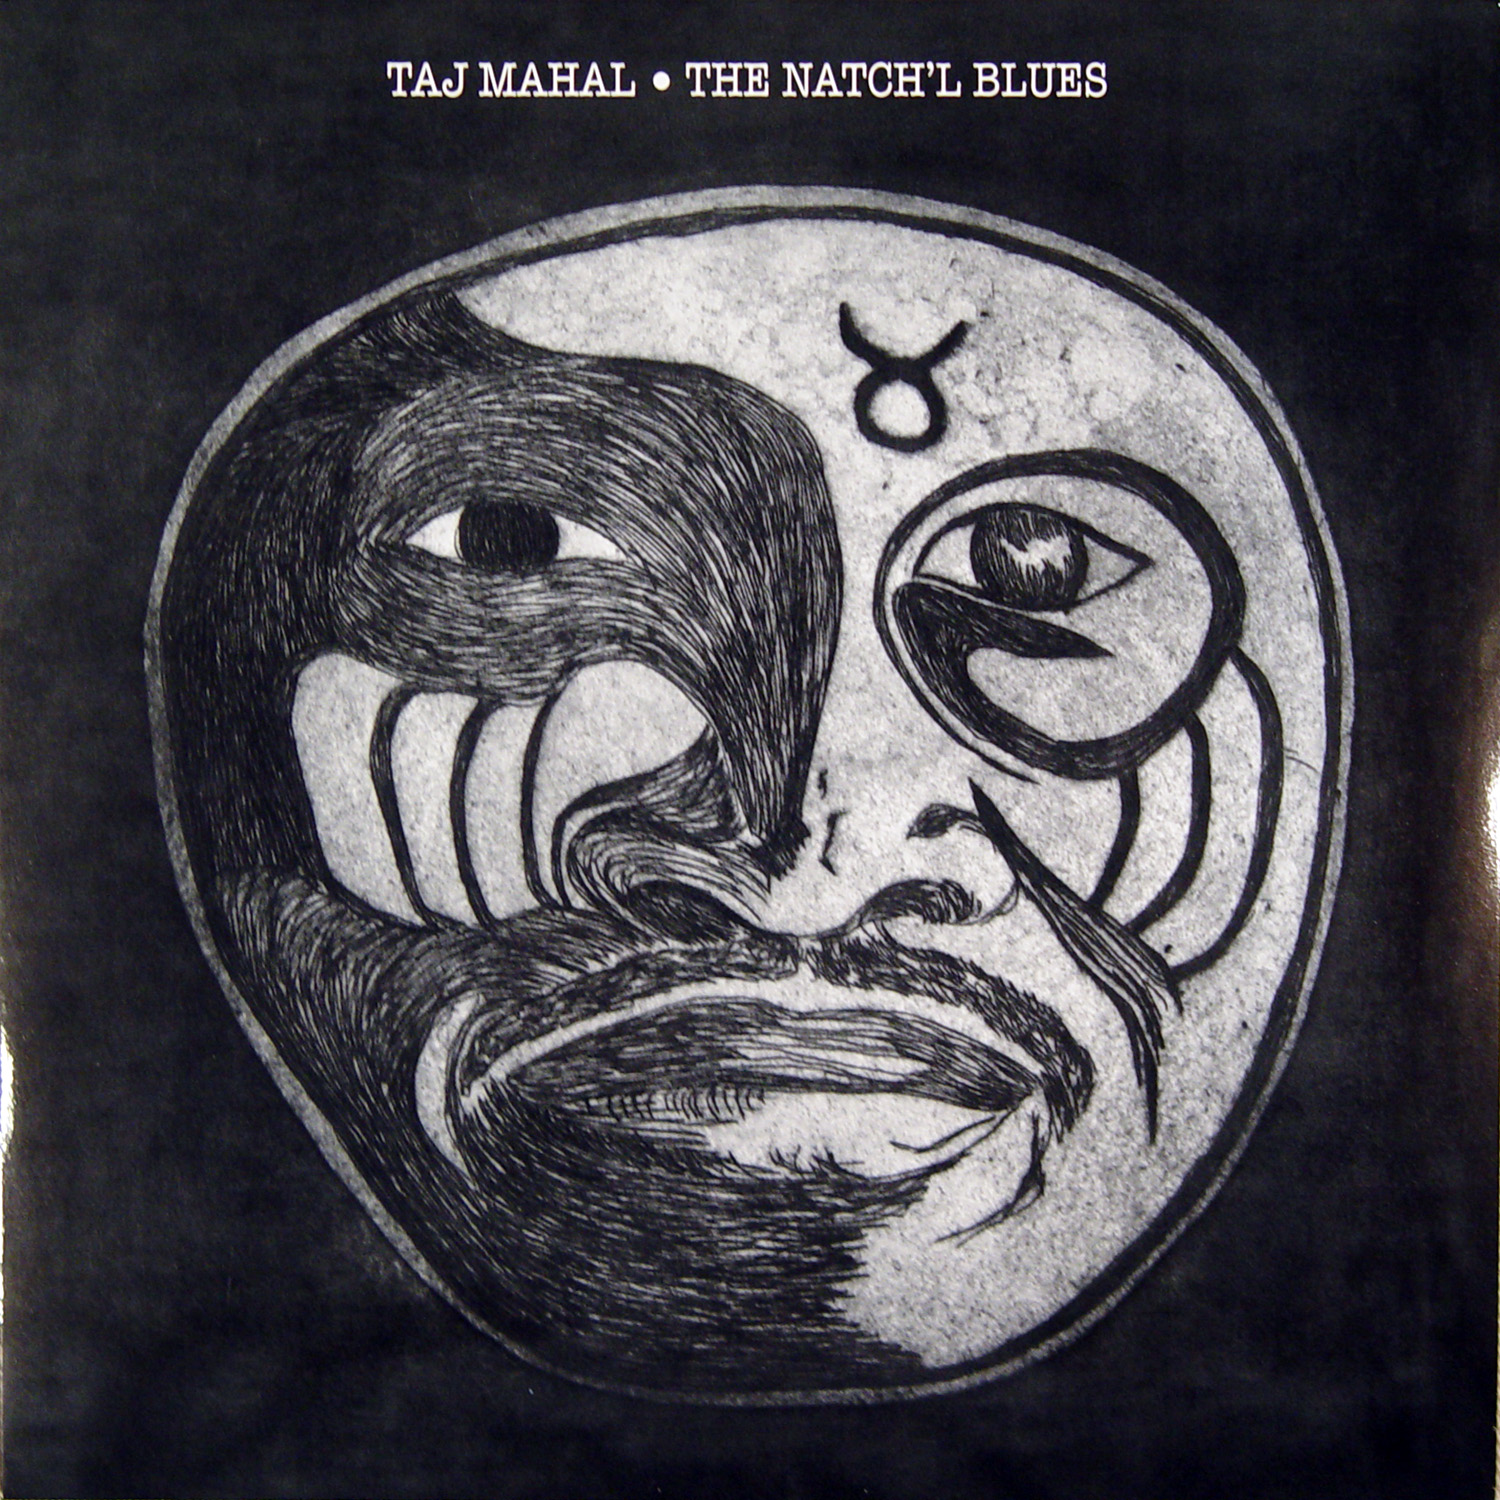 ¿Qué estáis escuchando ahora? - Página 3 Taj+Mahal+-+The+Natch'l+Blues+(front)